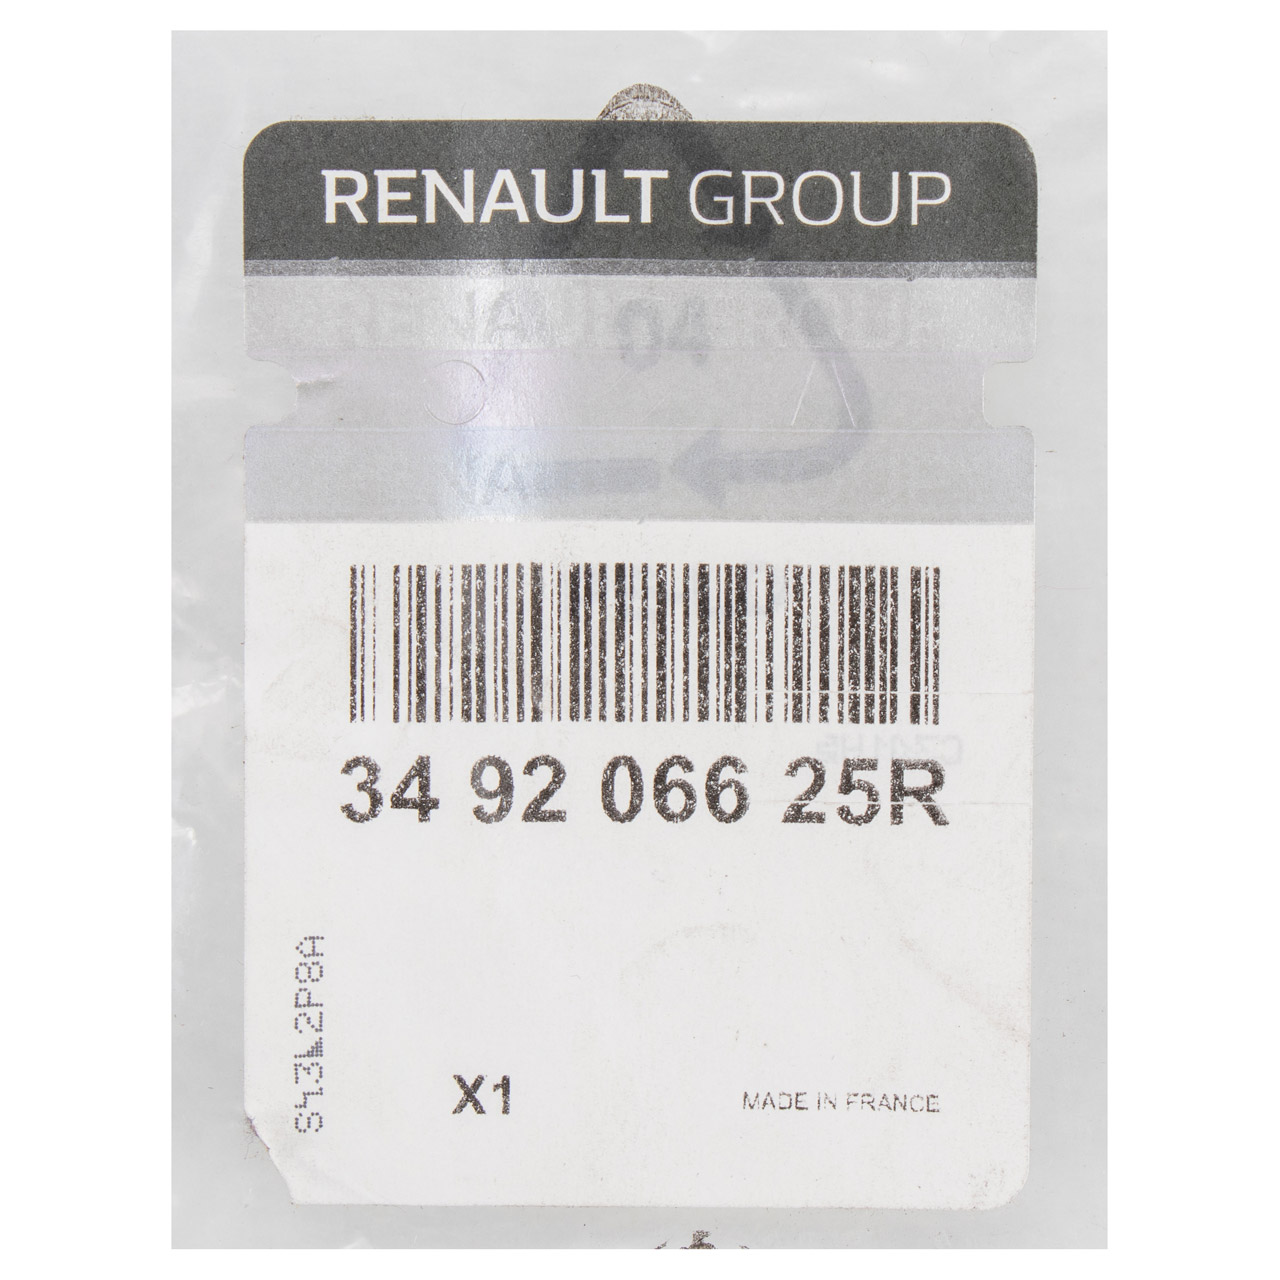 ORIGINAL Renault Schaltknauf Schalthebel 7-Gang Schaltung Kadjar Megane 4 349206625R